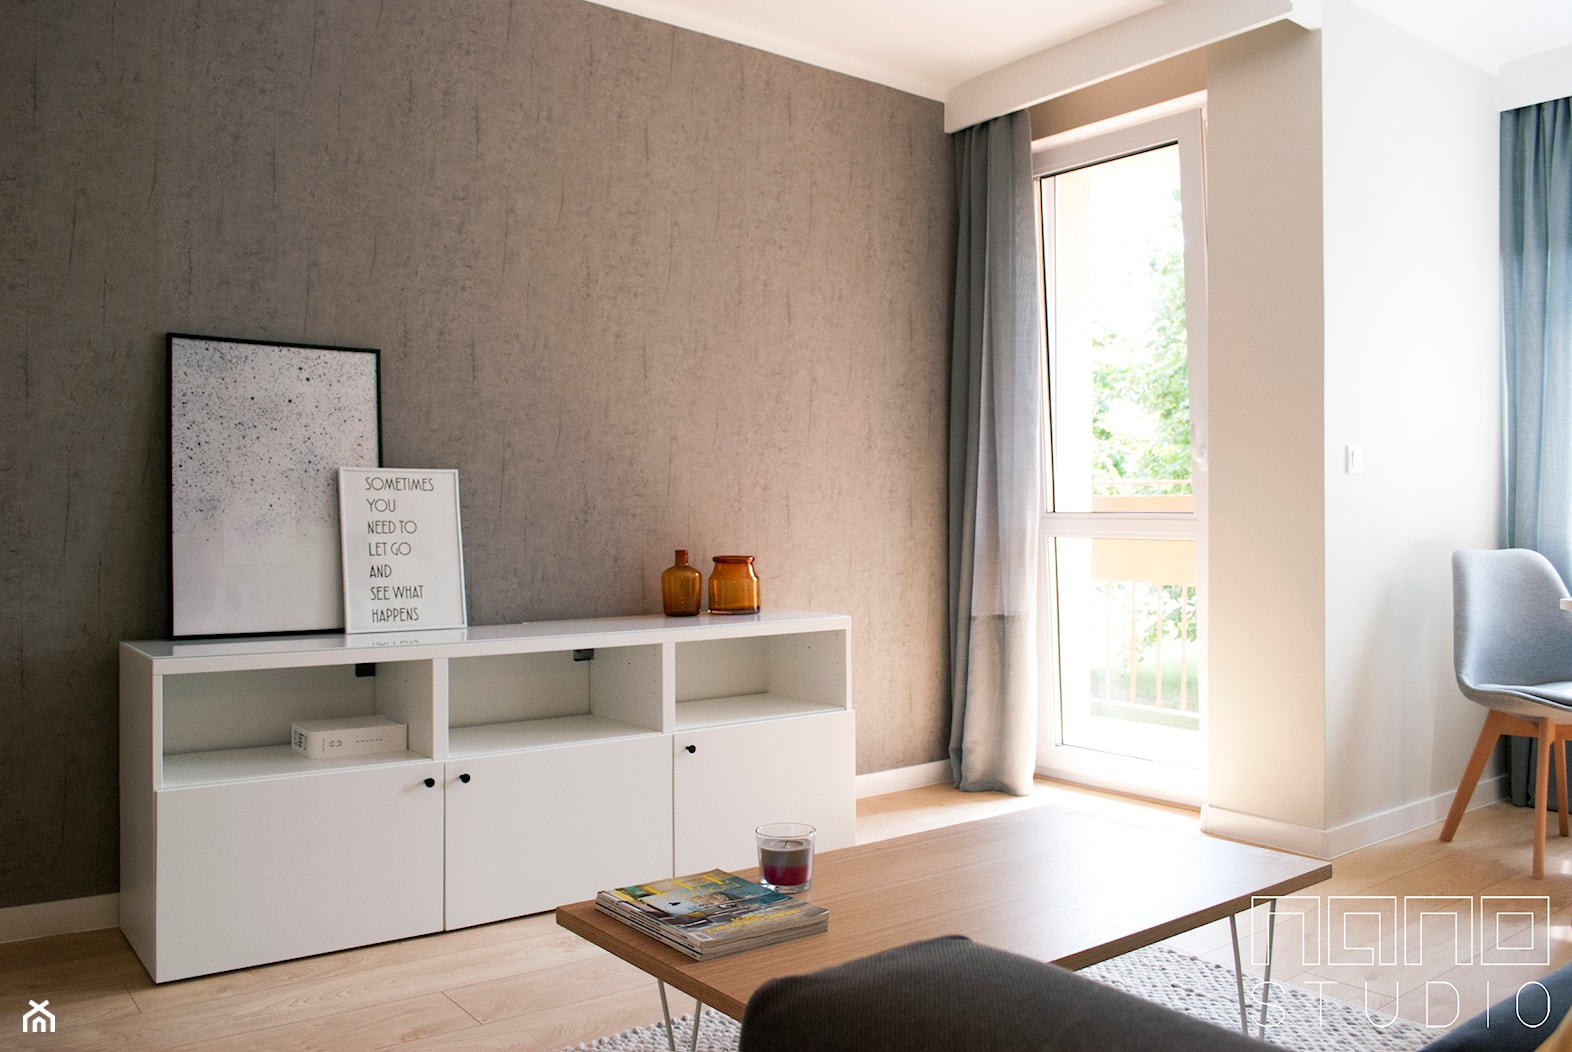 Dwupokojowe mieszkanie w Raciborzu - Salon, styl nowoczesny - zdjęcie od nanoSTUDIO - Homebook